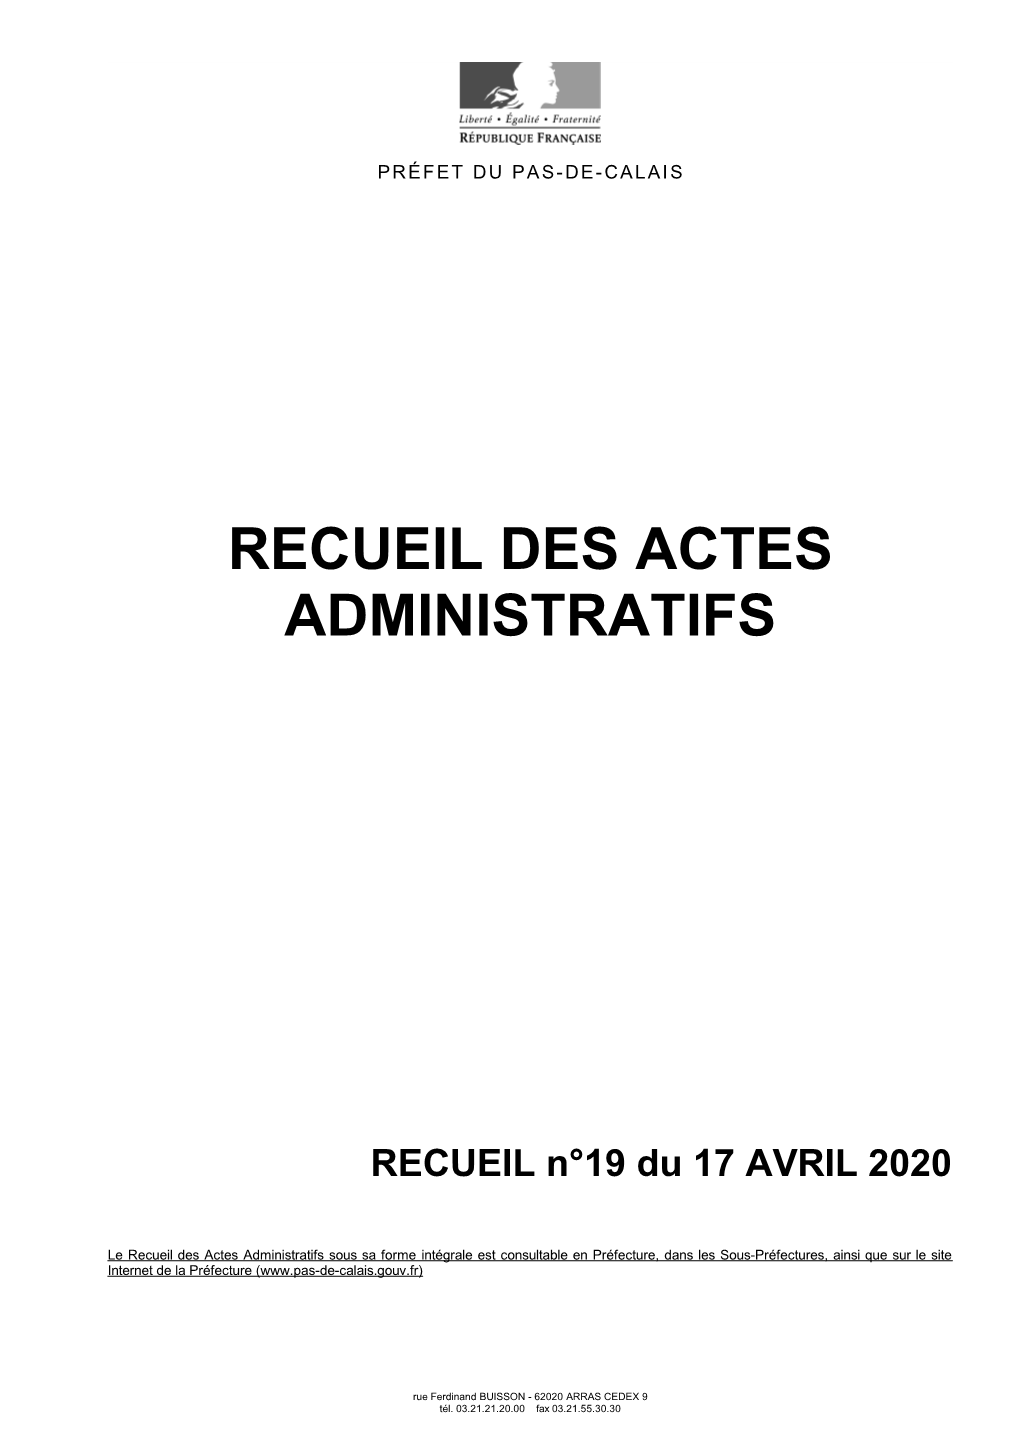 Recueil Des Actes Administratifs N°19 En Date Du 17 Avril 2020